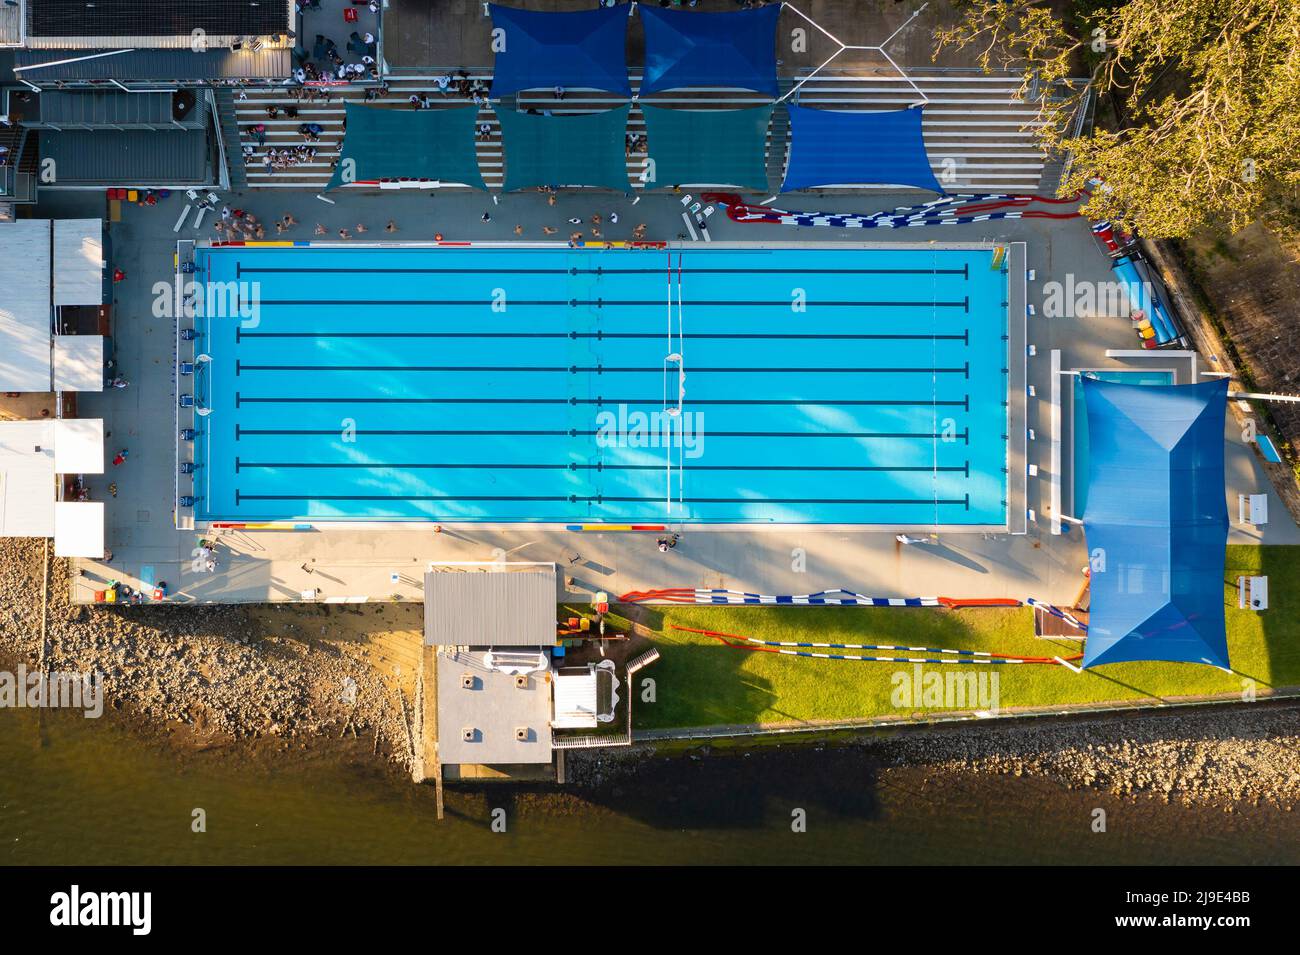 Vista aerea dall'alto verso il basso della piscina Foto Stock